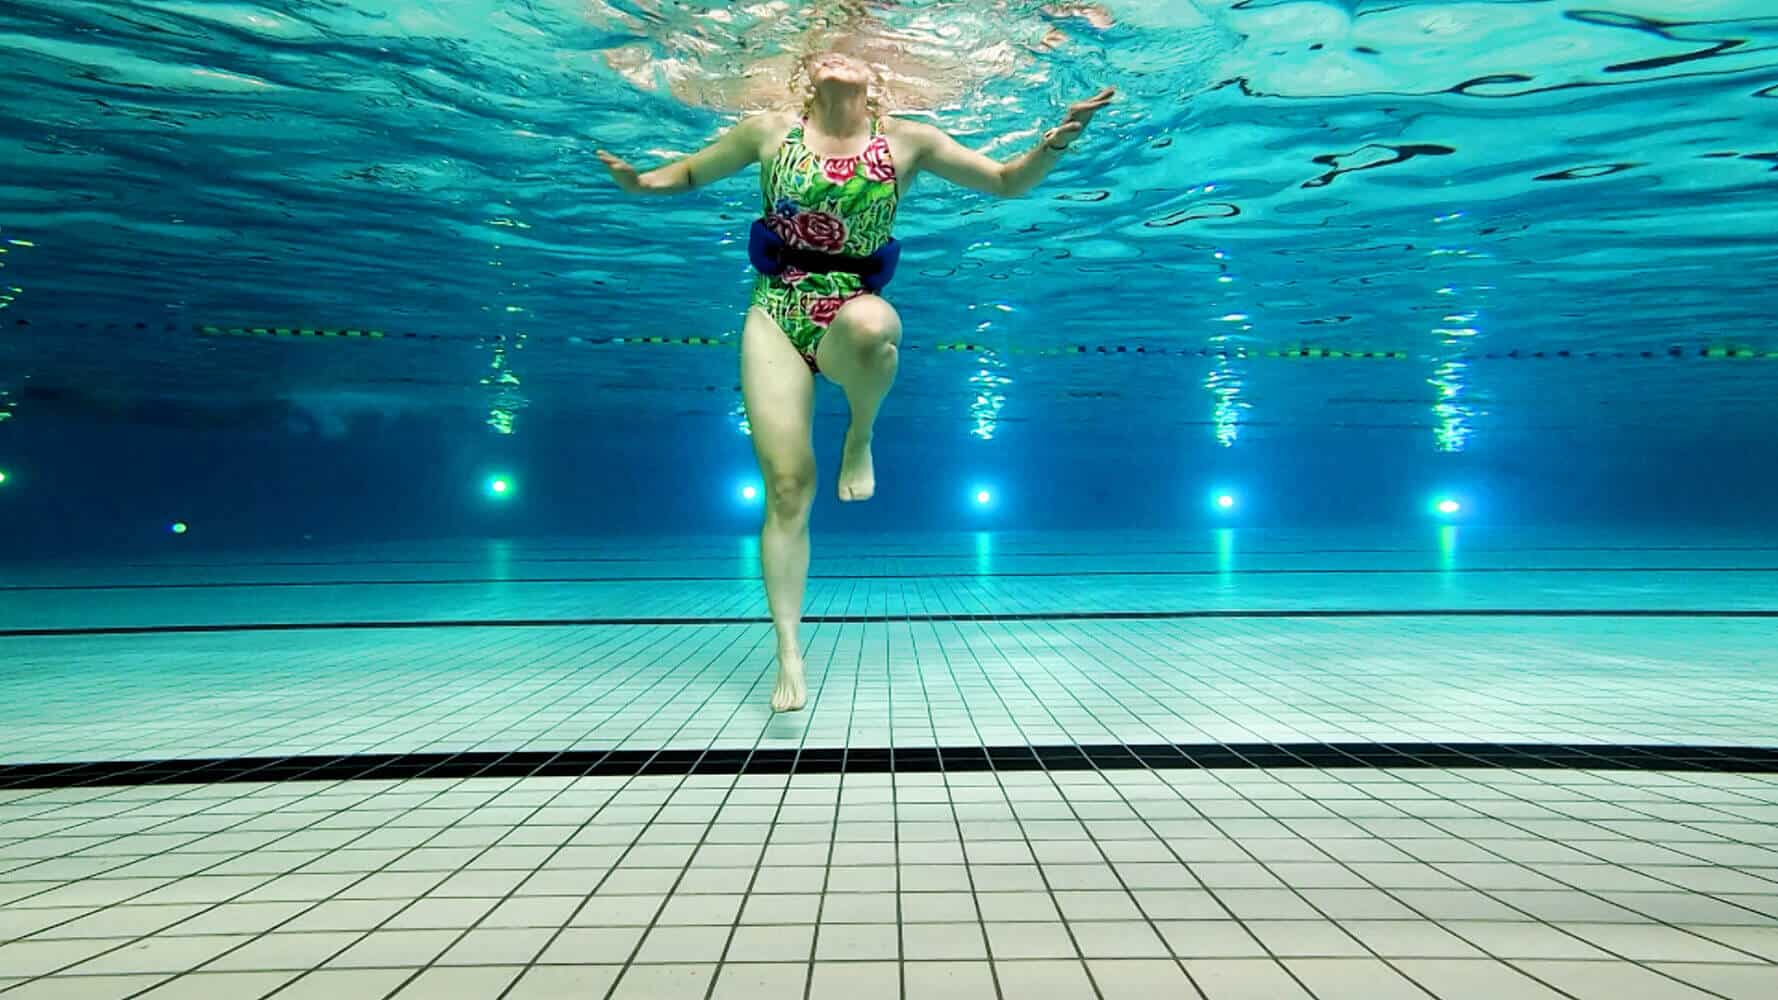 Grens Kent Kenia Loopscholingsoefening kaatsen in het zwembad – Aquarunning hardlopen zonder  schokbelasting